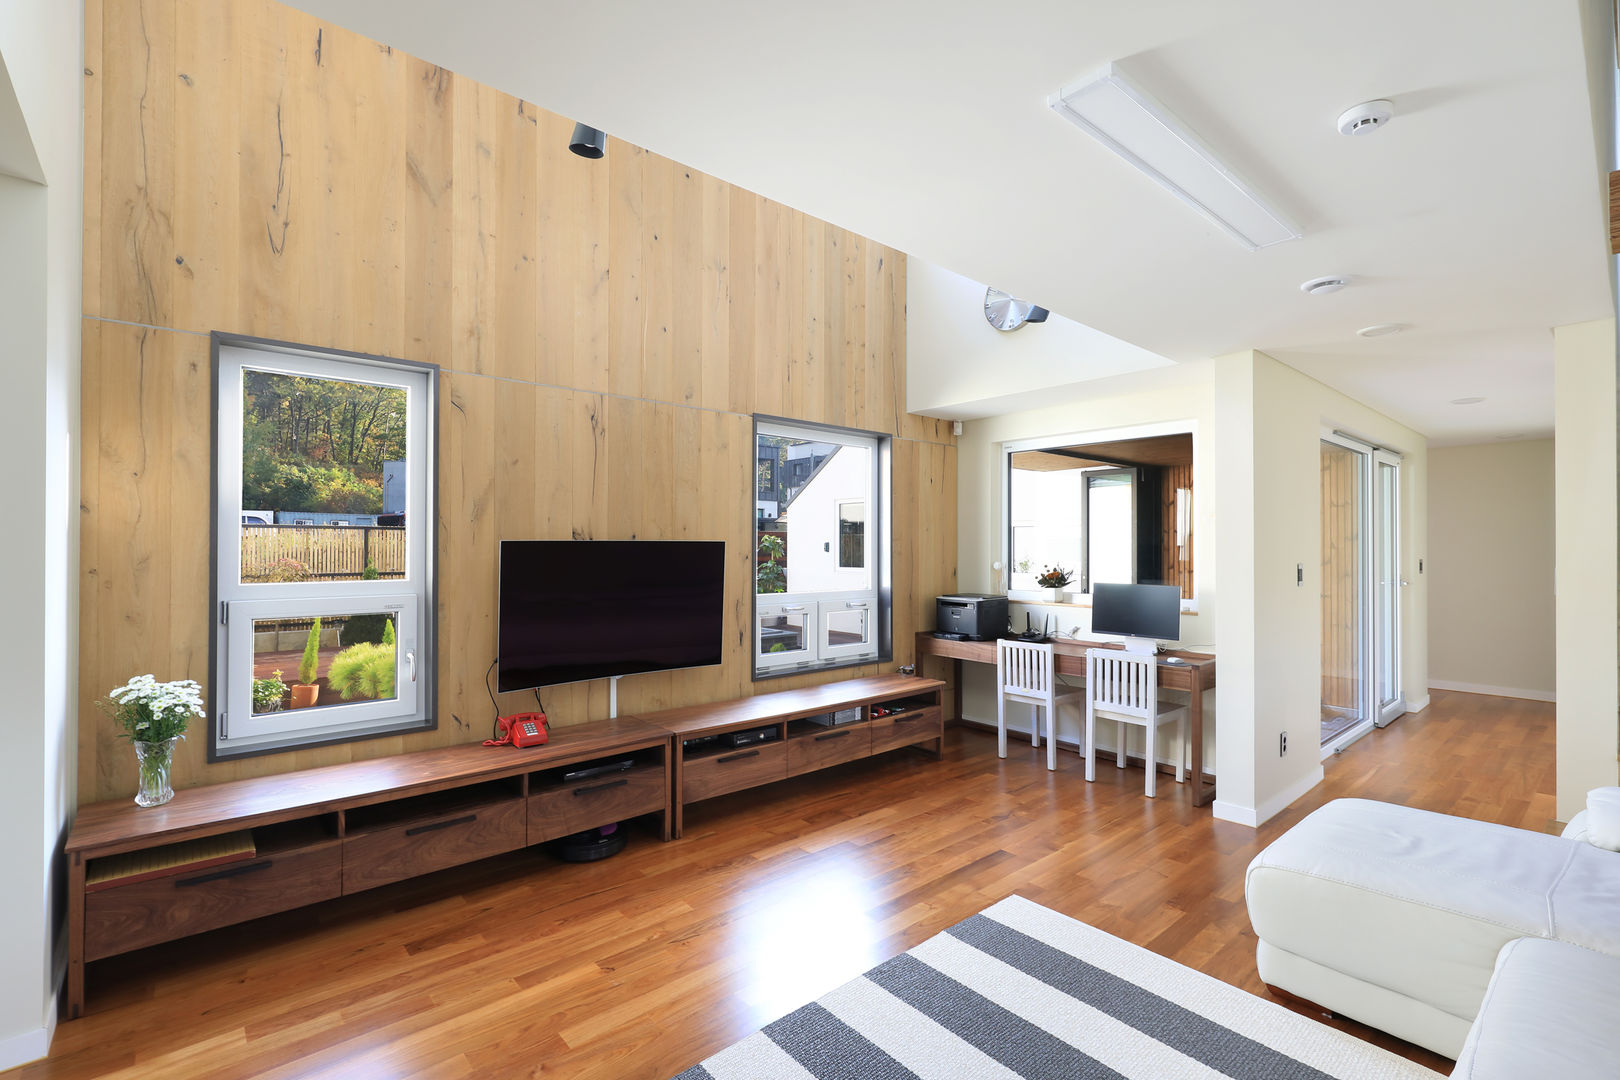 프라이버시는 소중해! 원주 'ㄷ'자집, 주택설계전문 디자인그룹 홈스타일토토 주택설계전문 디자인그룹 홈스타일토토 Modern living room Wood Wood effect